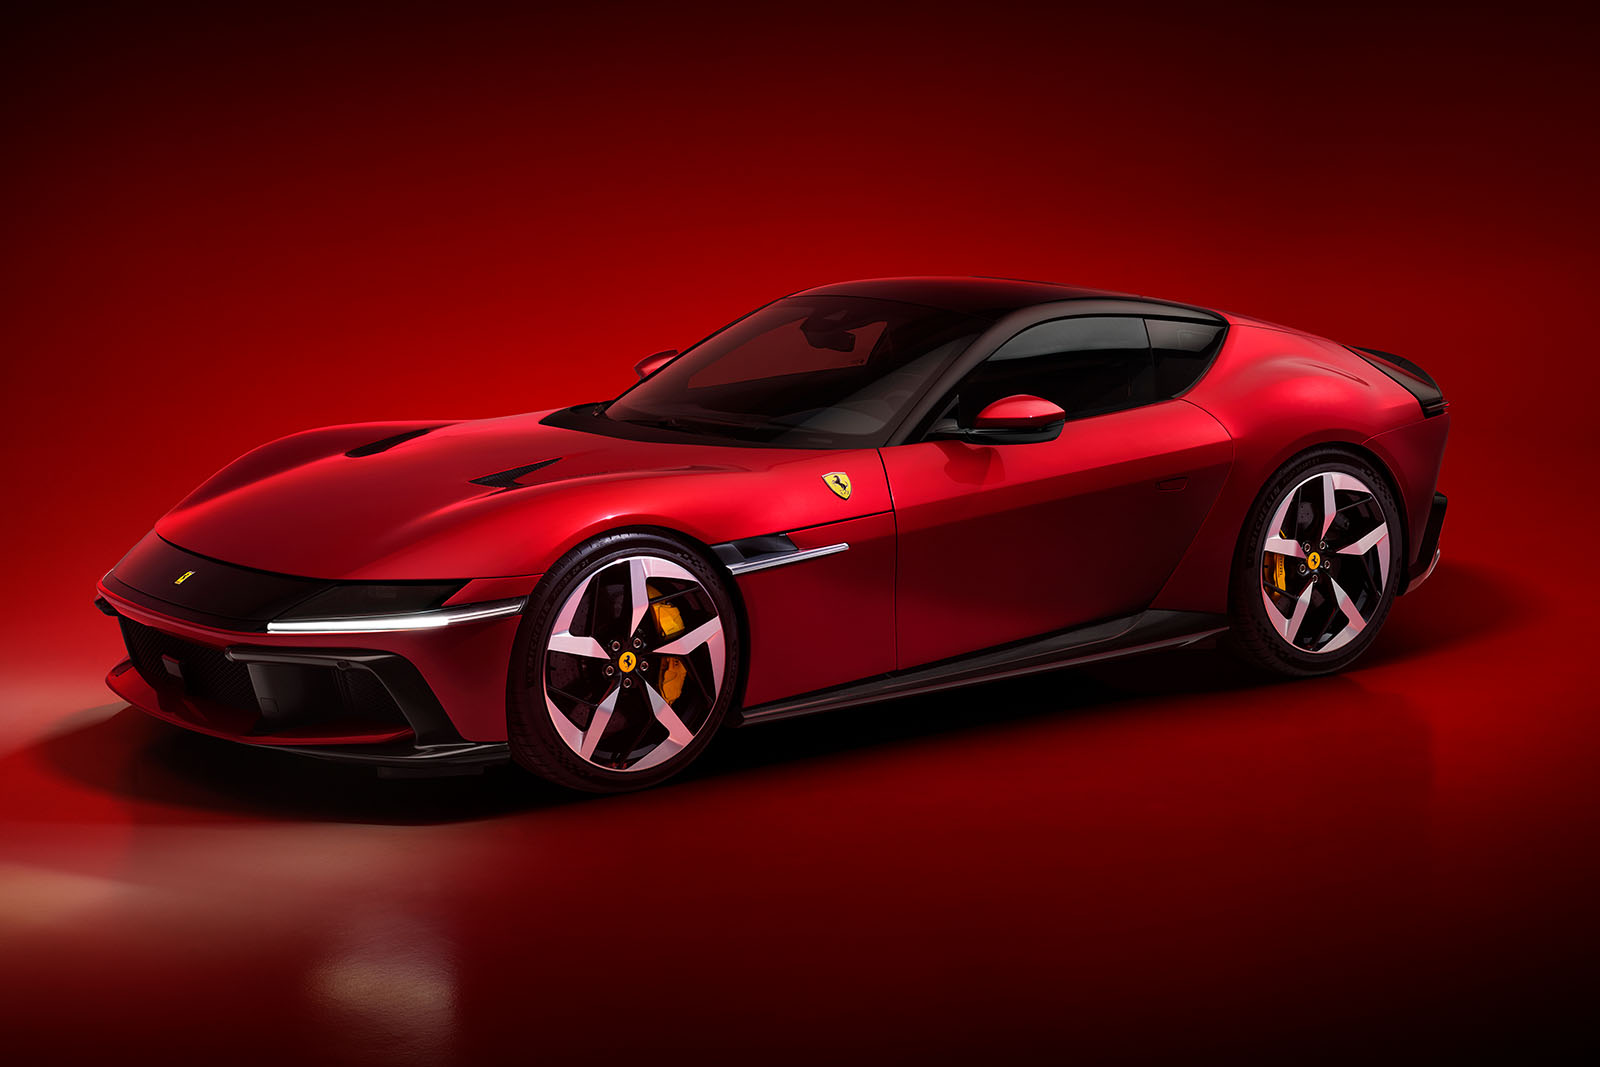 Ein 819 PS starker Ferrari 12-Zylinder mit einem brüllenden V12-Motor wurde vorgestellt